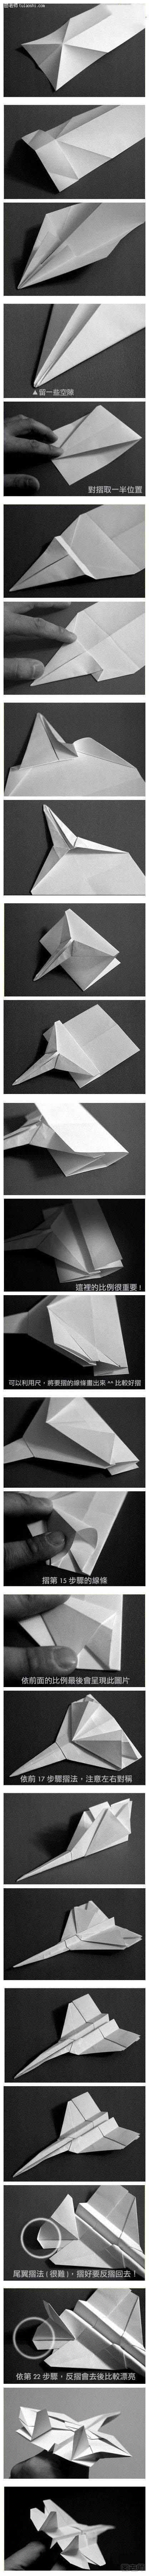 纸飞机折纸 战斗机手工折纸教程图解